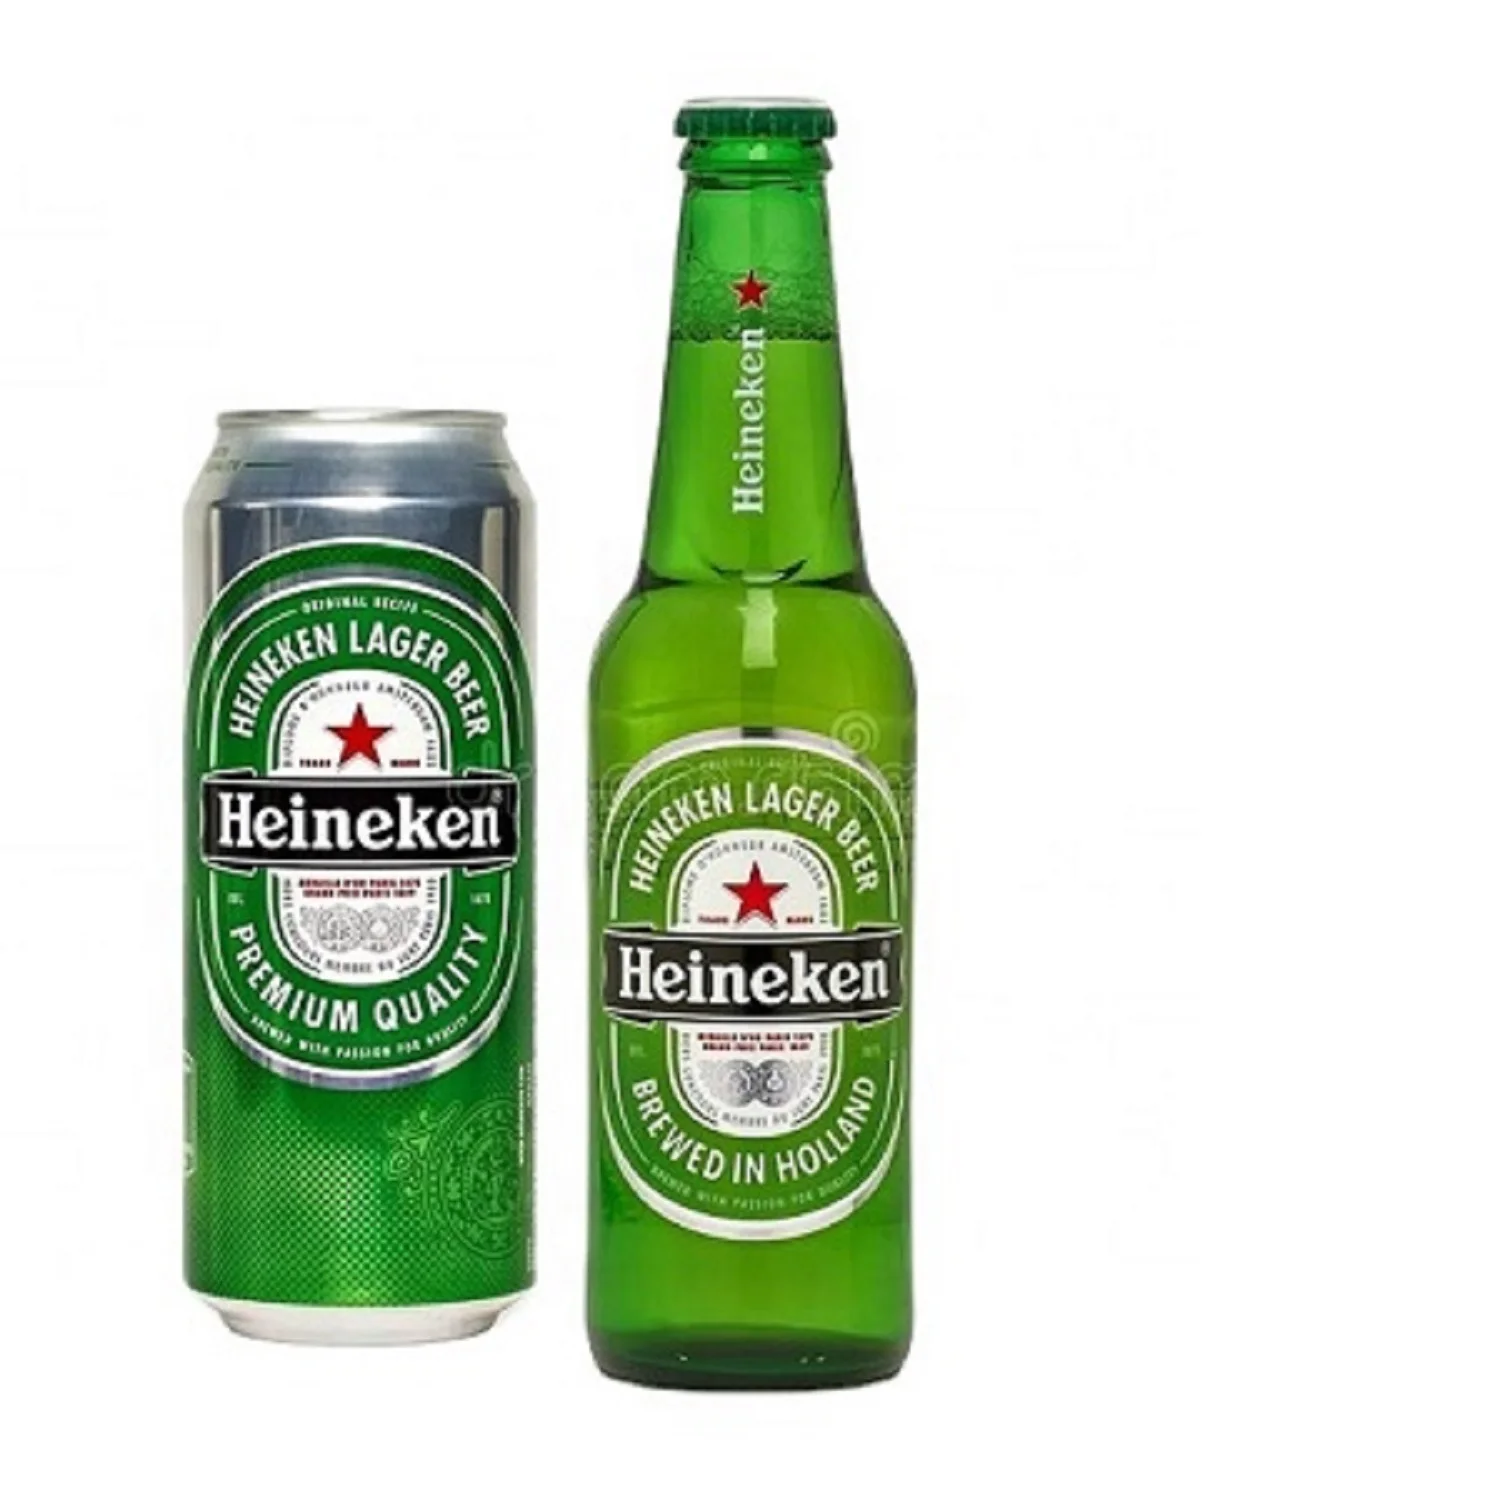 Bình chai Heineken là sản phẩm cực kỳ độc đáo và thu hút sự chú ý của rất nhiều người yêu thích bia. Với thiết kế đặc trưng đến từng chi tiết nhỏ nhất, bình chai Heineken mang đến cho bạn cảm giác tiện dụng, đẳng cấp và sang trọng. Hãy xem hình ảnh sản phẩm để tận hưởng vẻ đẹp độc đáo này nhé.